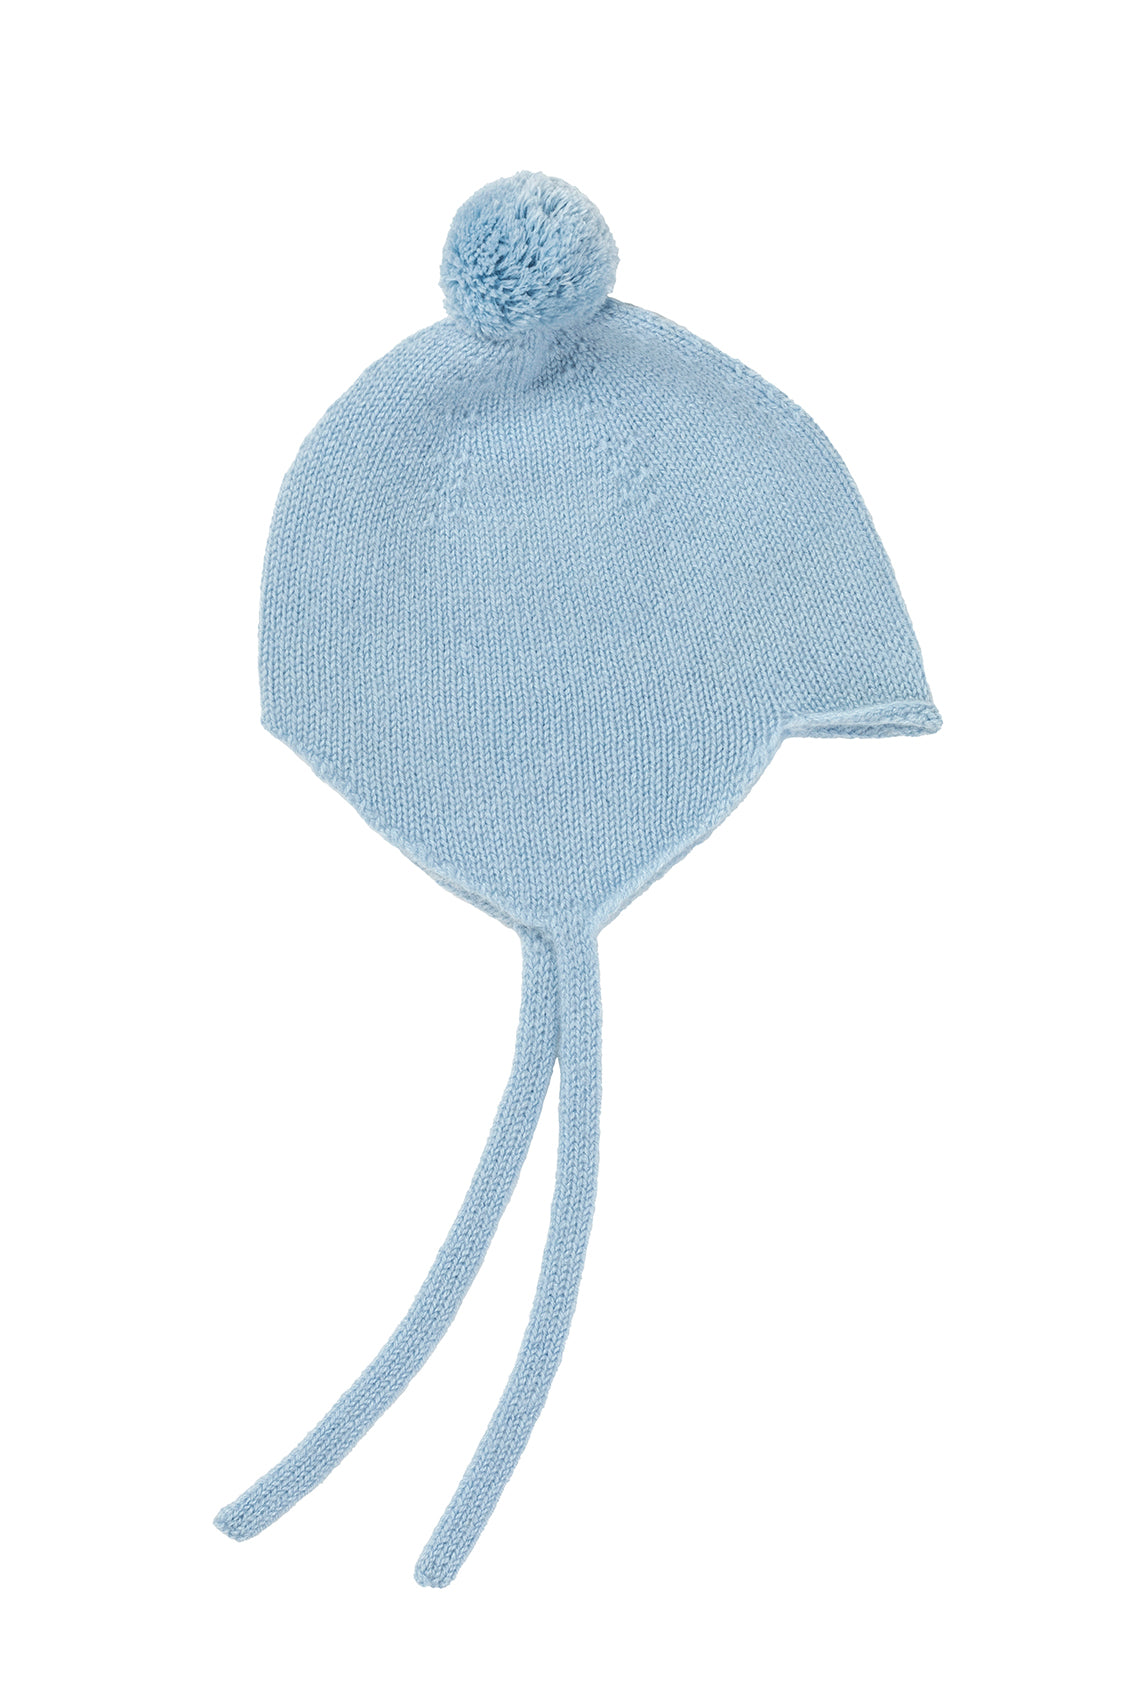 Cashmere Spa Blue Baby Bonnet 0-3 Months